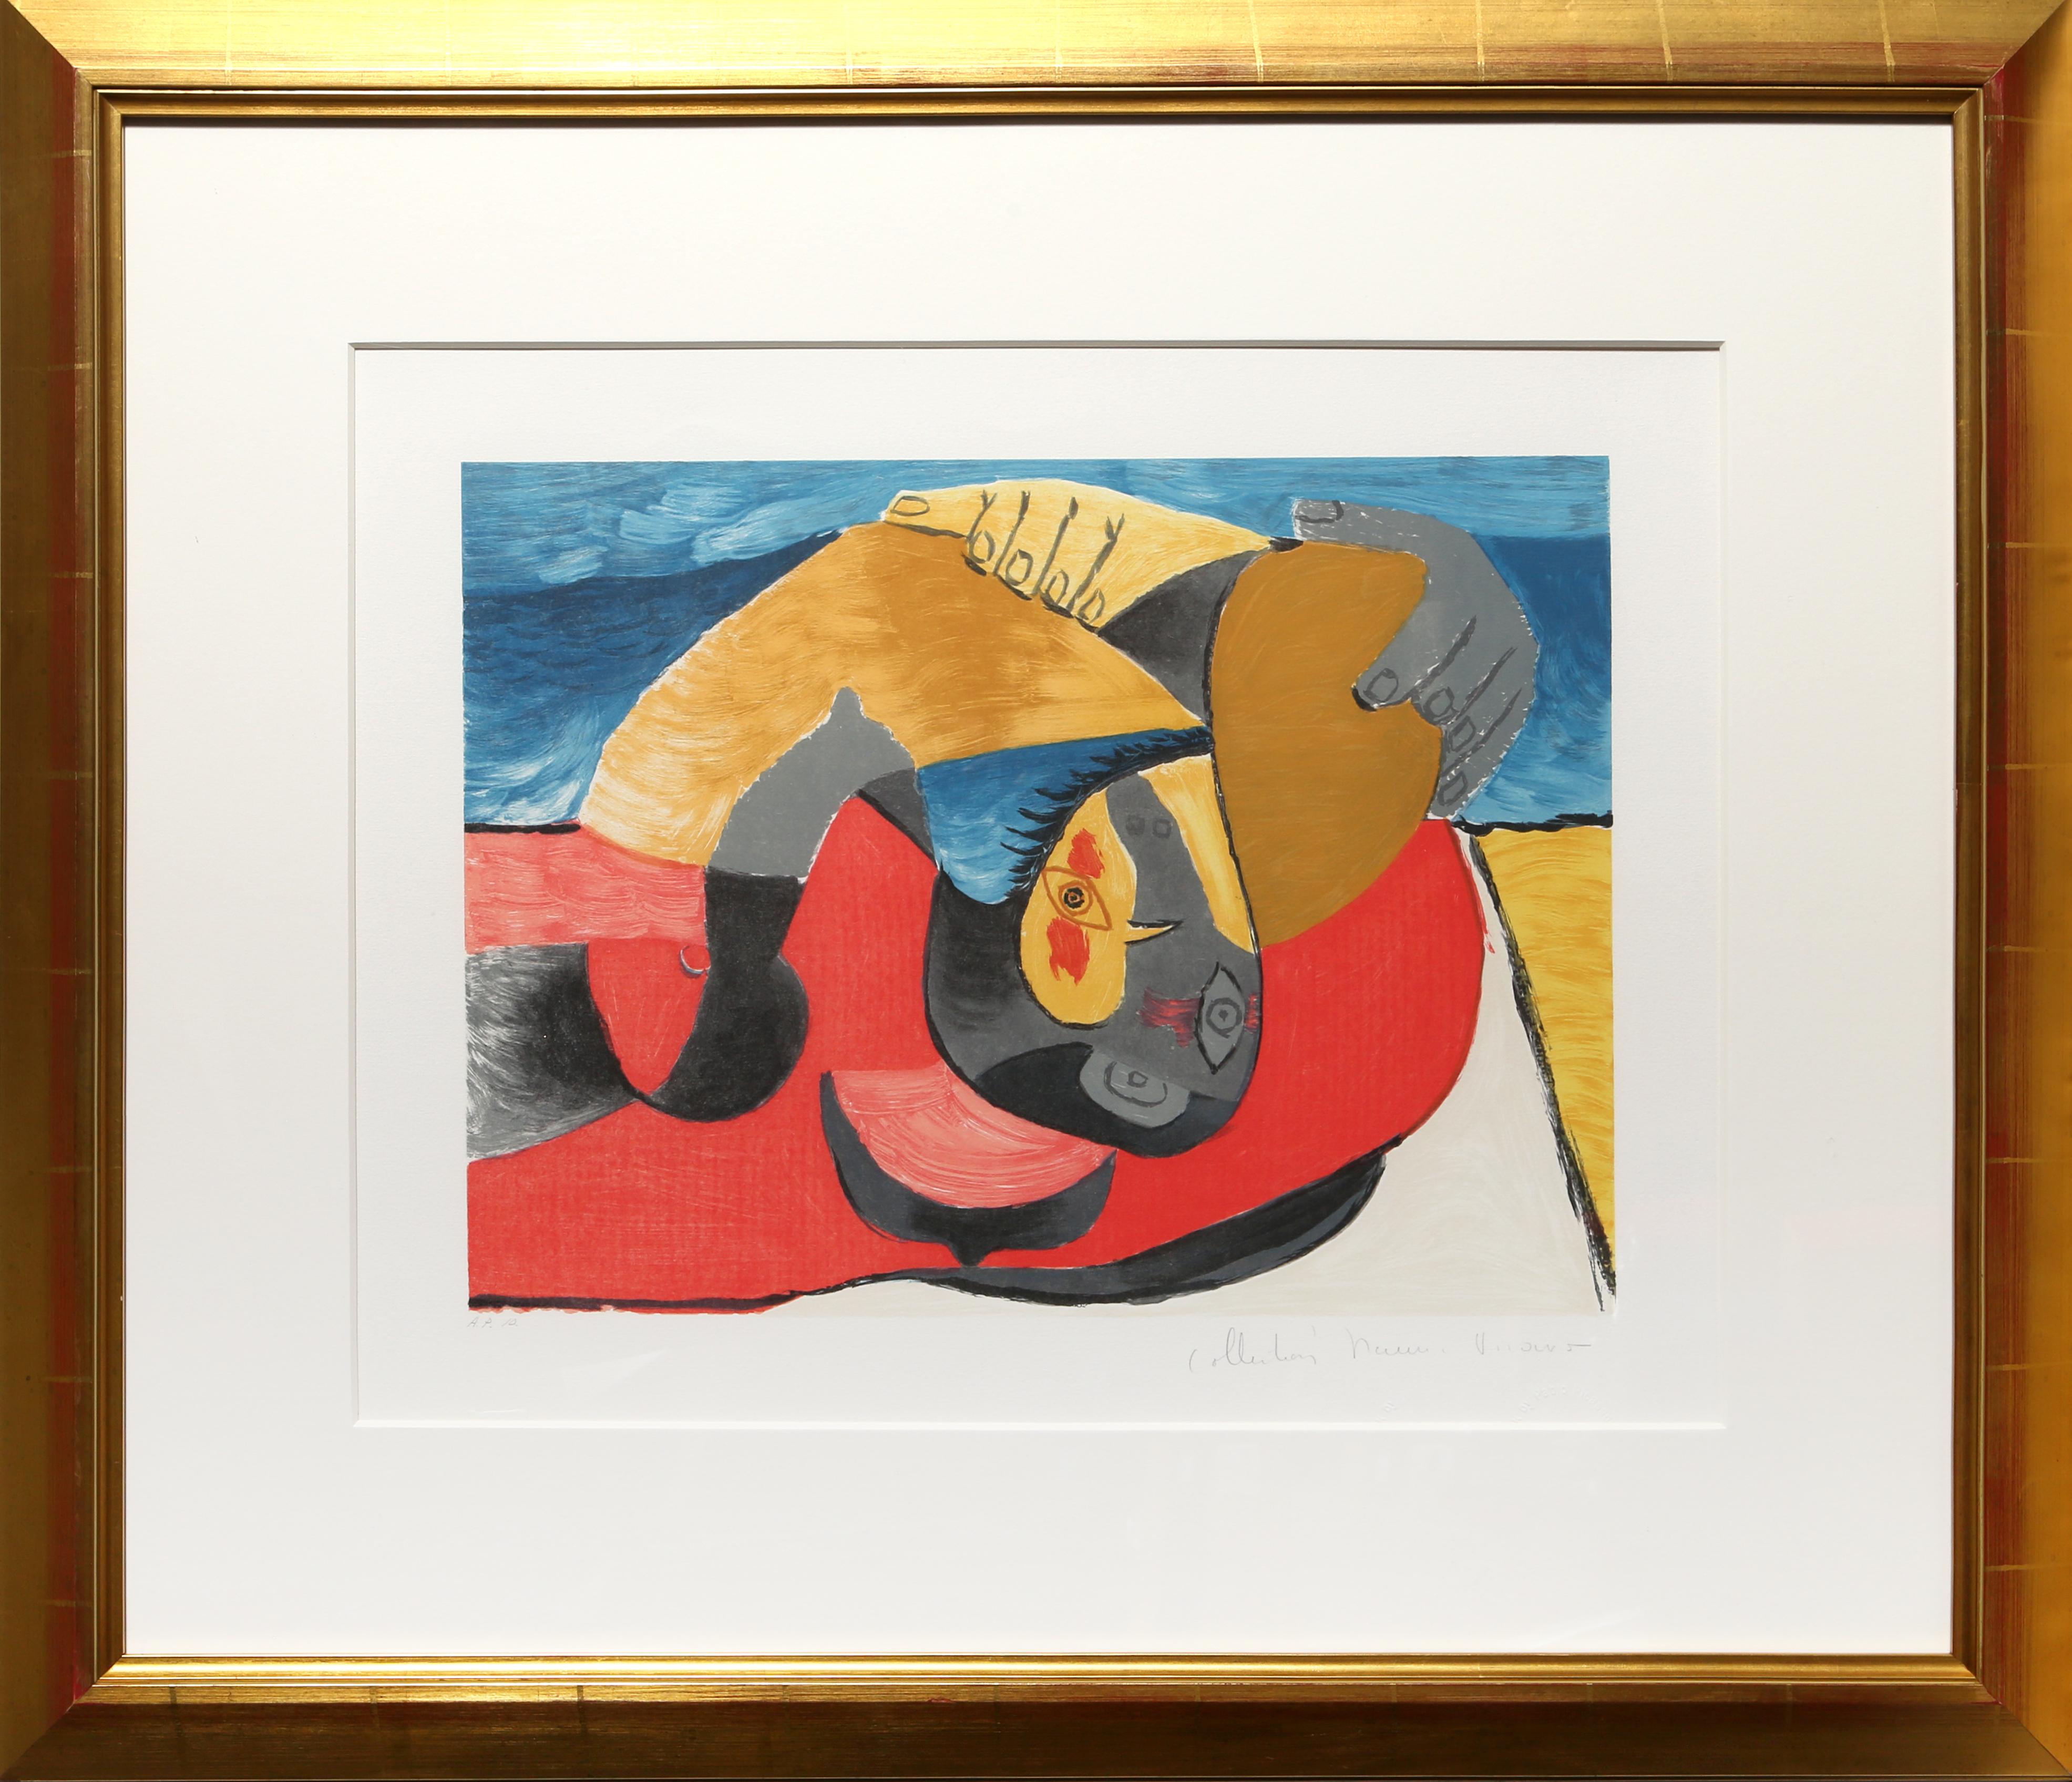 Lithographie de la Collection S de Marina Picasso d'après le tableau de Pablo Picasso "Femme Couchée".  La peinture originale a été achevée en 1942. Dans les années 1970, après la mort de Picasso, Marina Picasso, sa petite-fille, a autorisé la